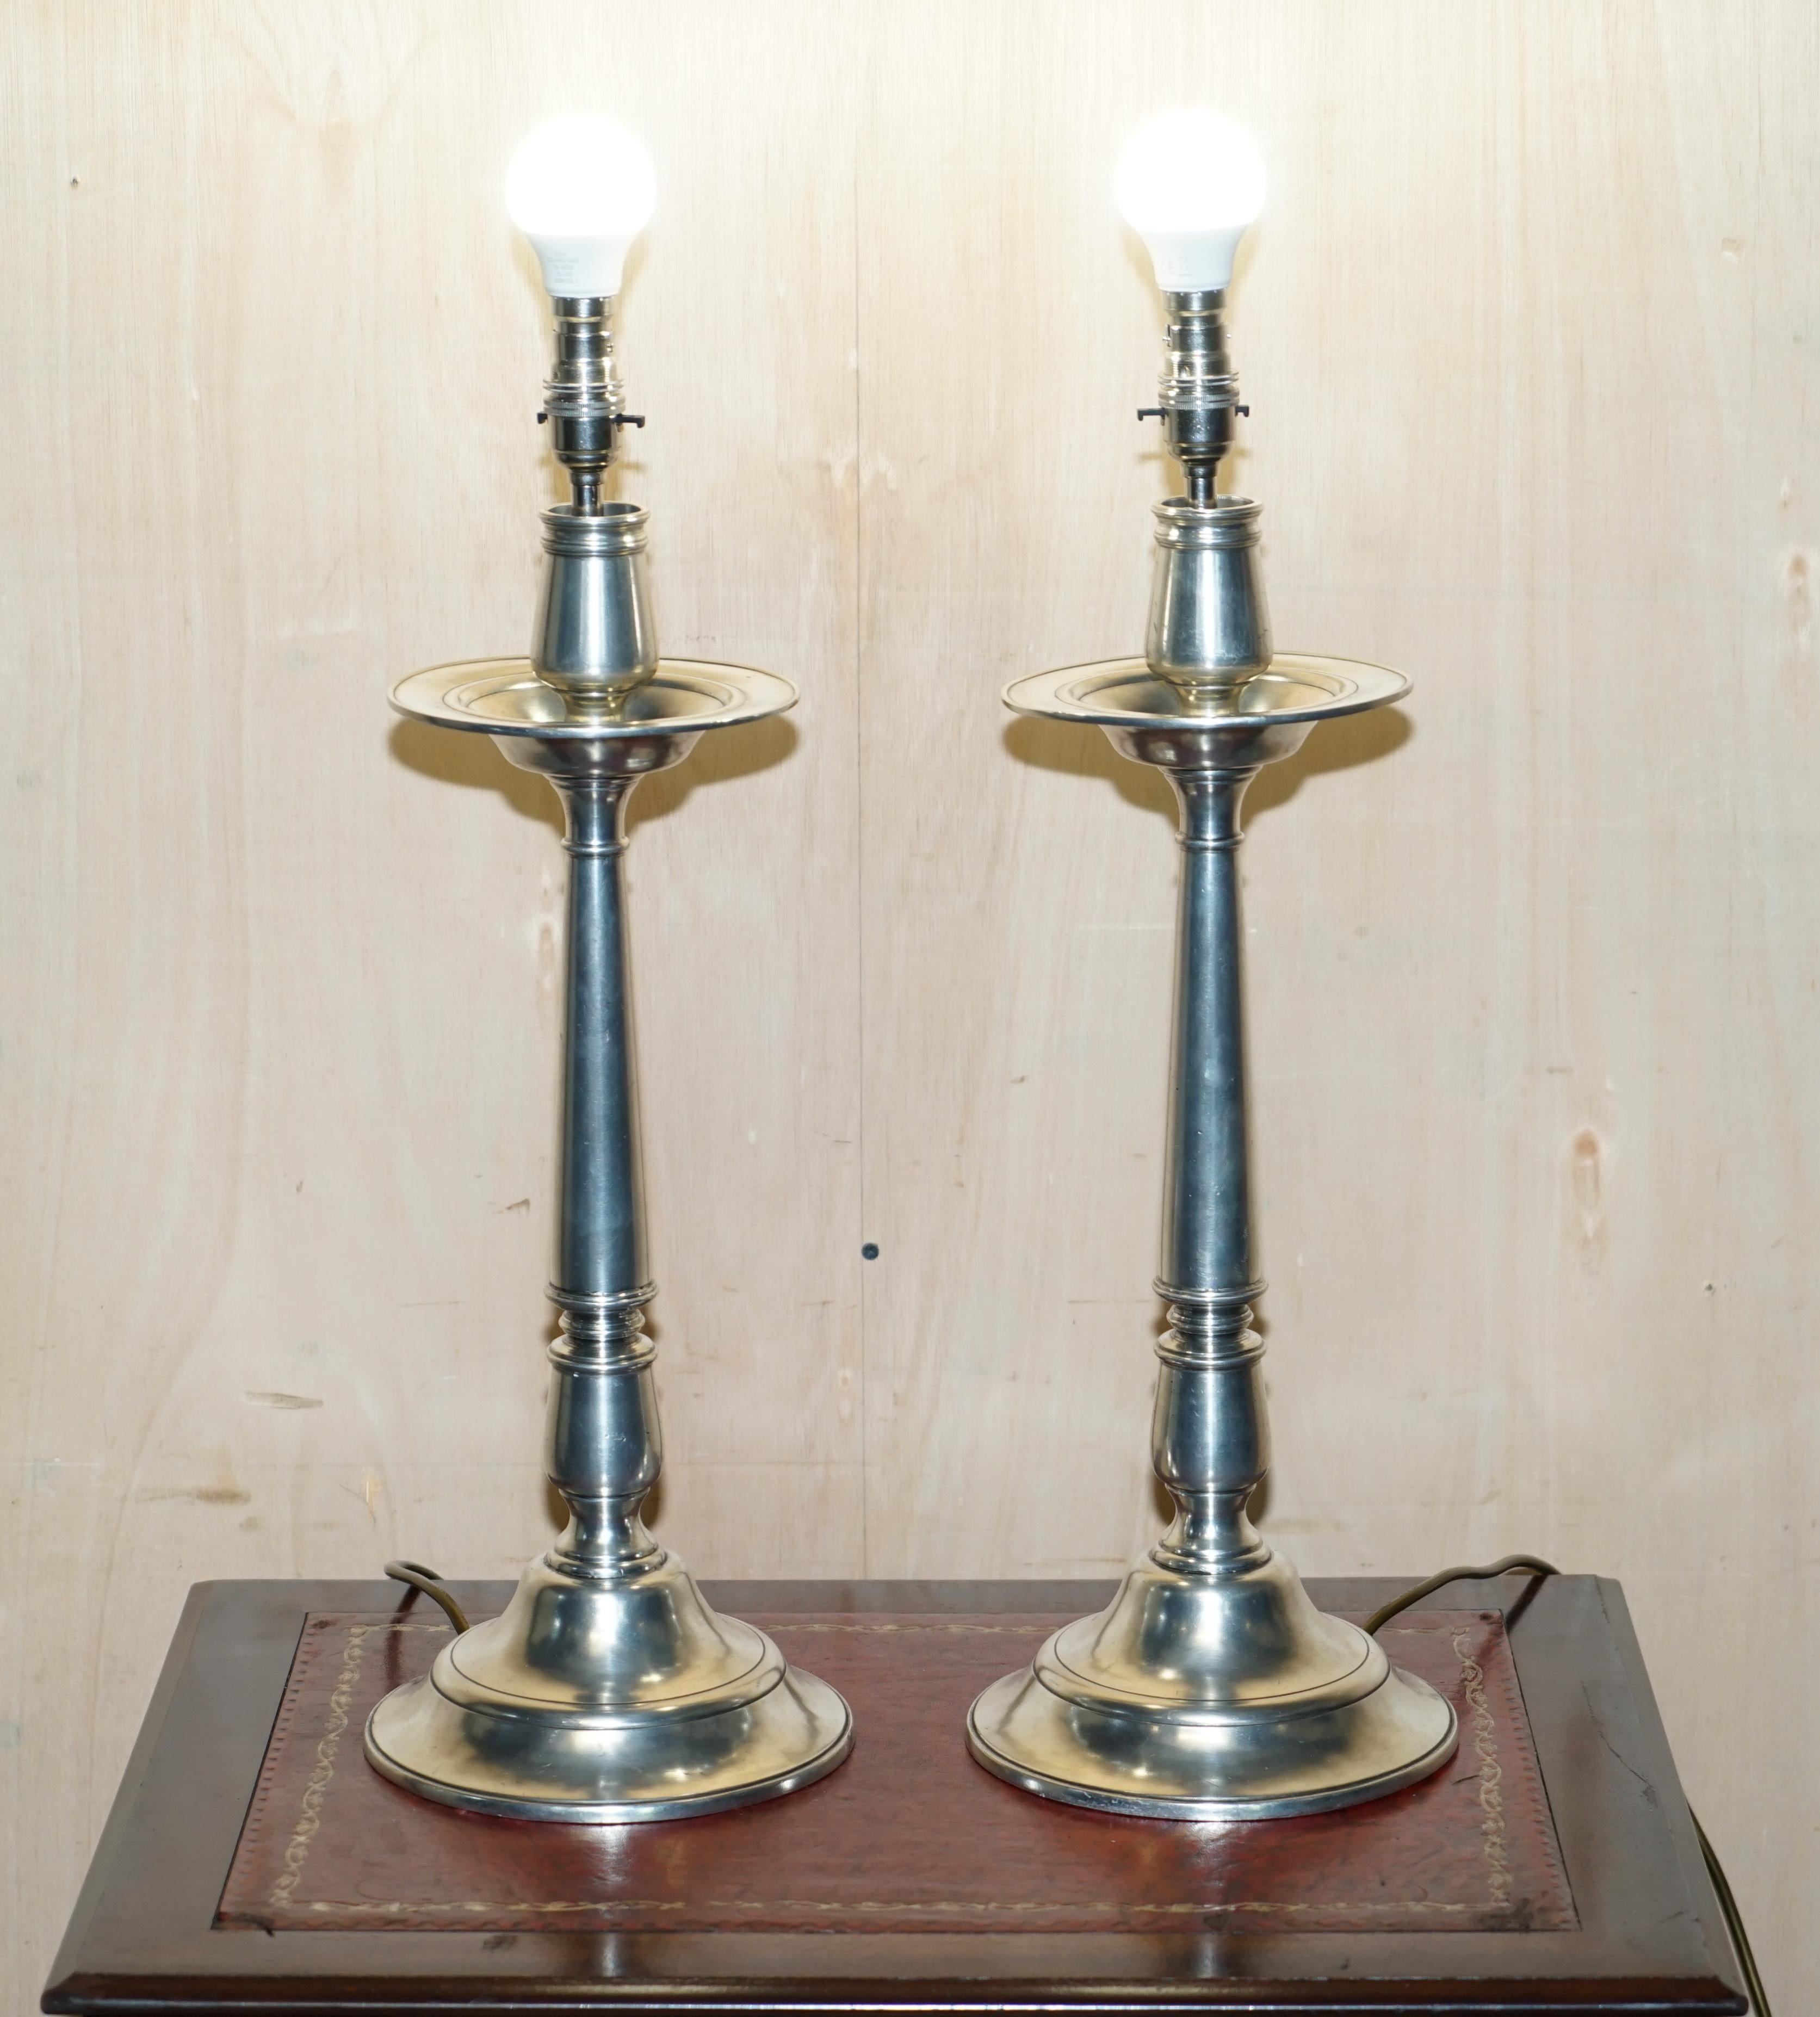 Royal House Antiques

The House Antiques est ravie d'offrir à la vente cette paire de lampes de table Arte Italica Tavola Marinoni qui font partie d'une suite de lampes à chandelier.

J'ai quelques variations de ces lampes, il y a deux paires de